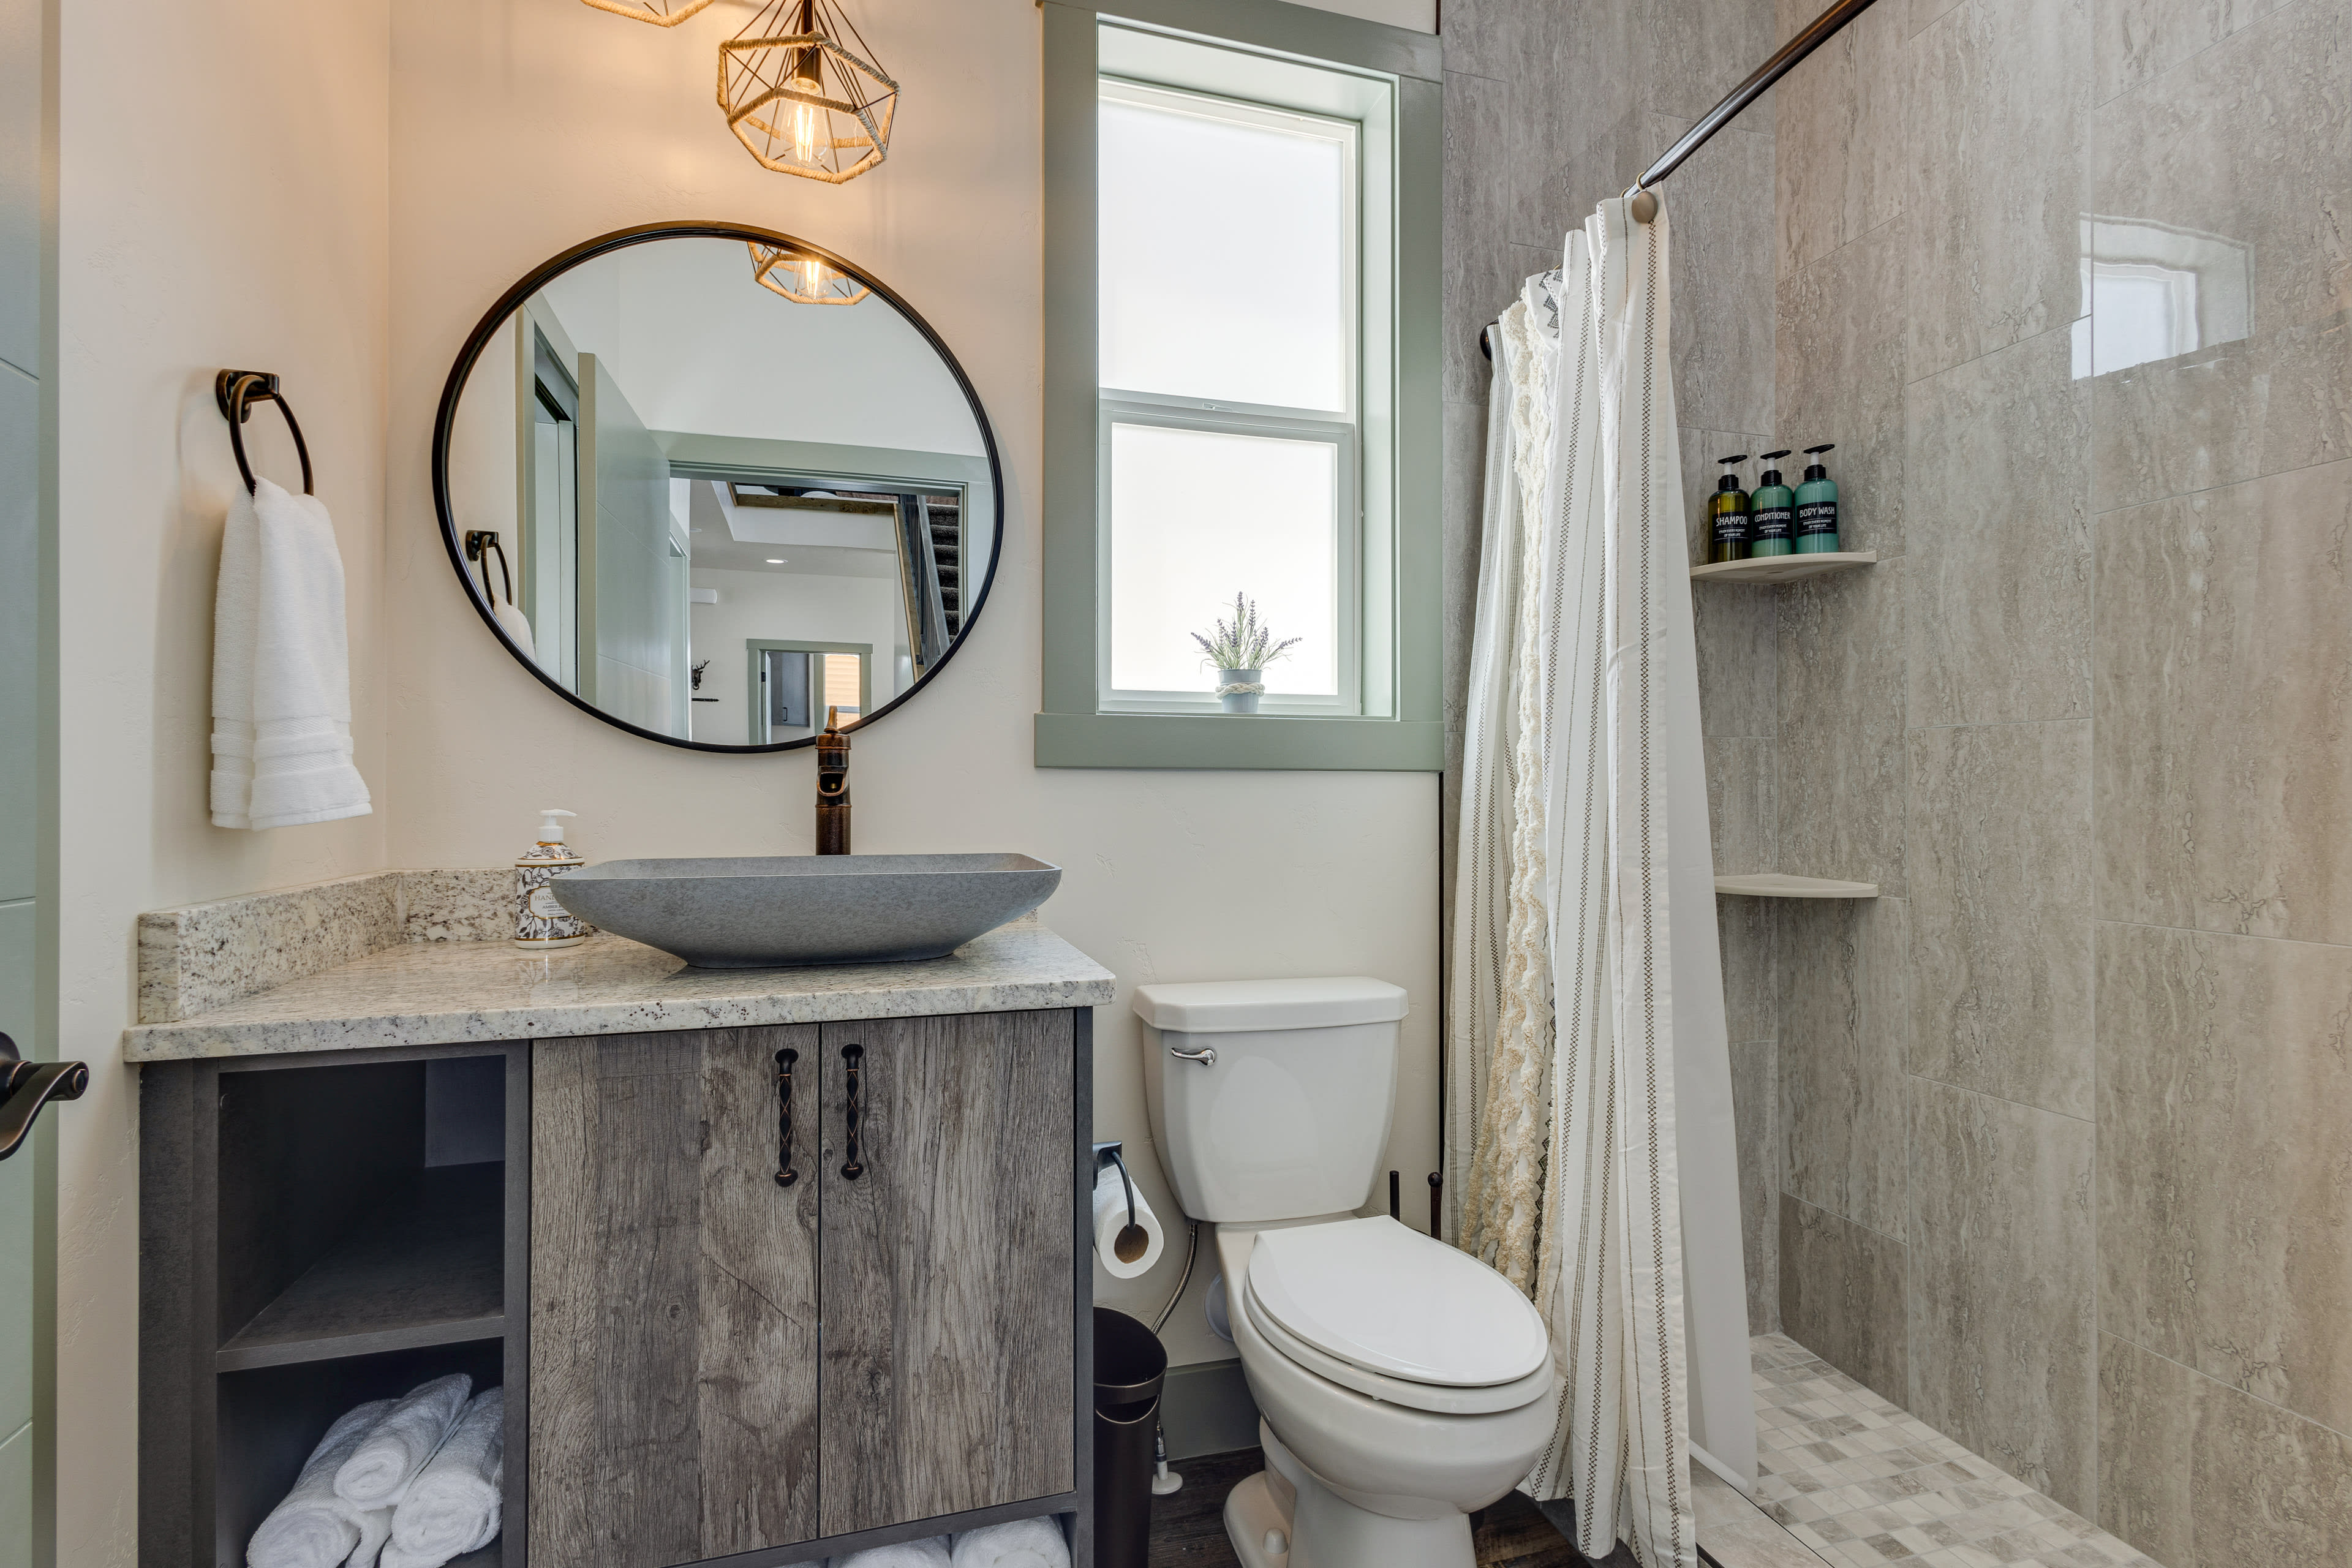 En-Suite Bathroom | Complimentary Toiletries | Hair Dryer